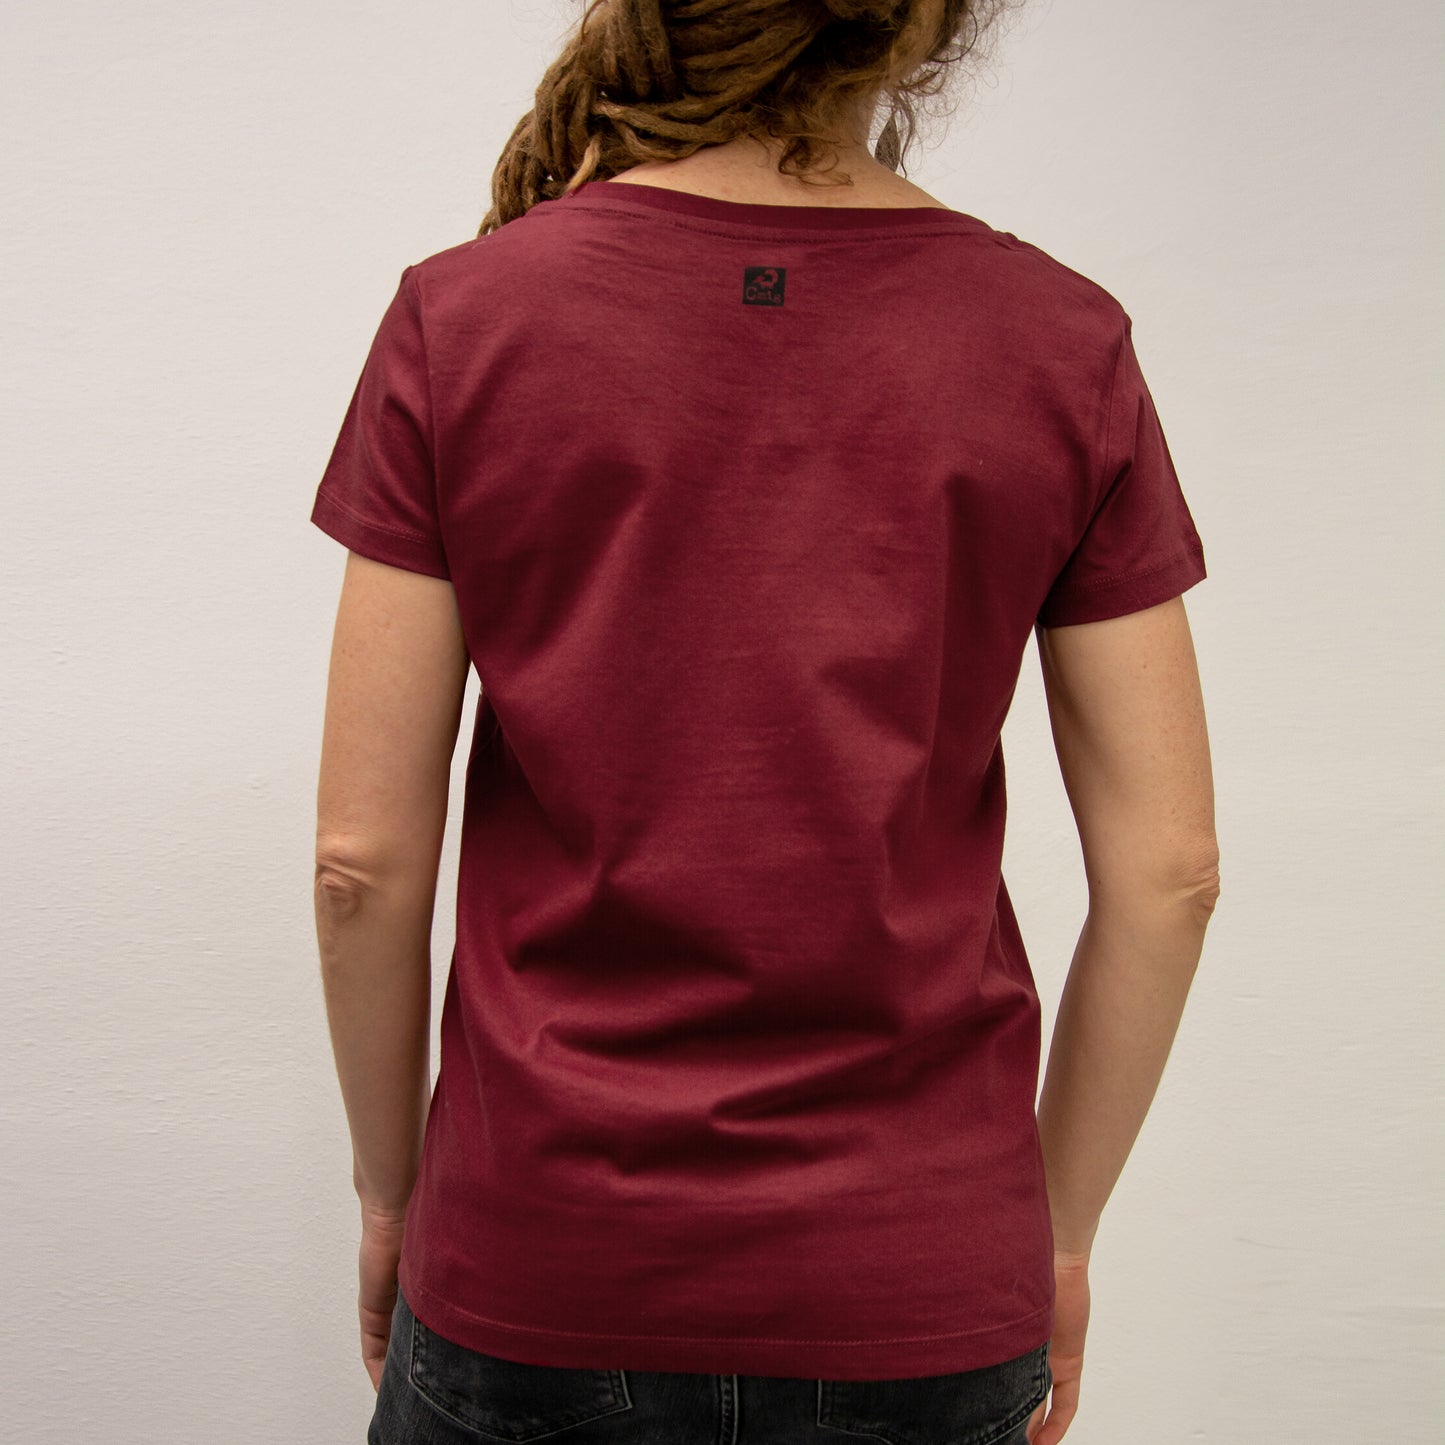 Erle mit Elster T-Shirt in burgundy XS-XL